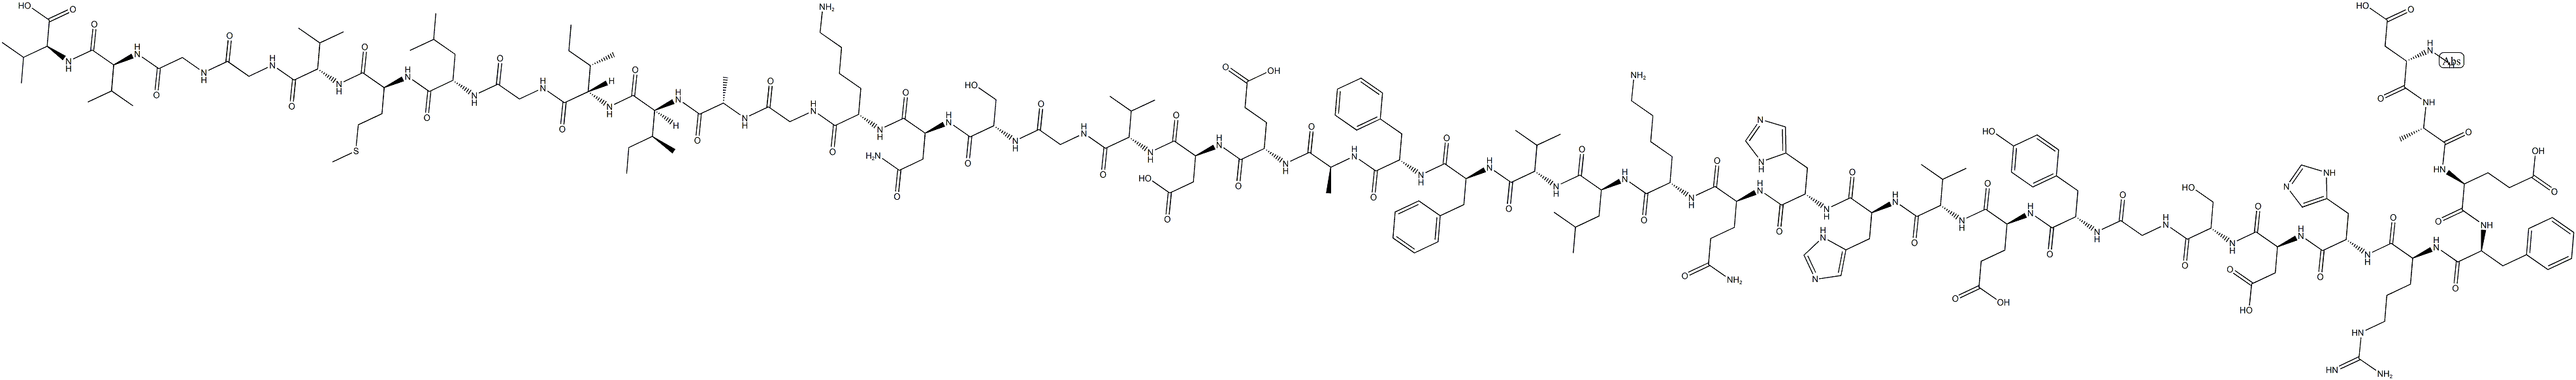 アミロイドΒ-プロテイン (ヒト, 1-40)